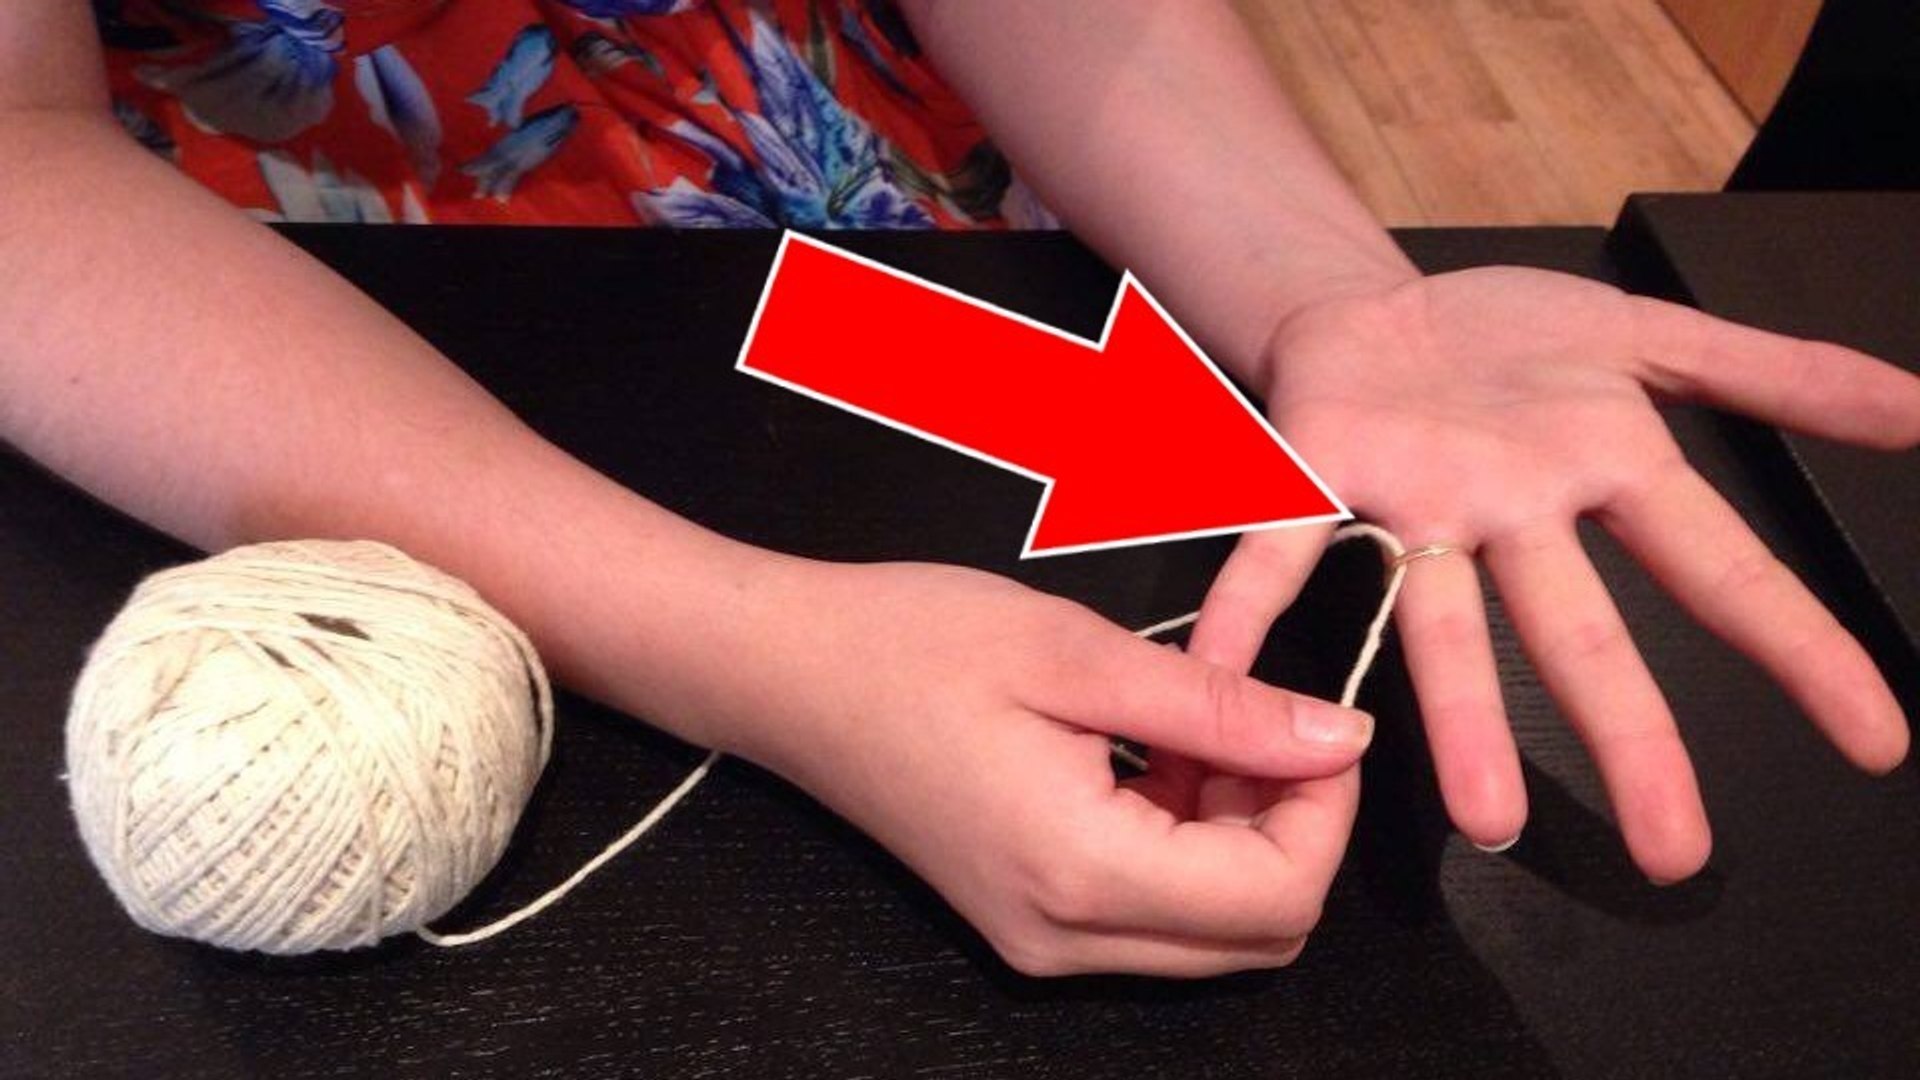 Comment retirer une bague coincée sur un doigt un peu trop gonflé ? - Vidéo  Dailymotion